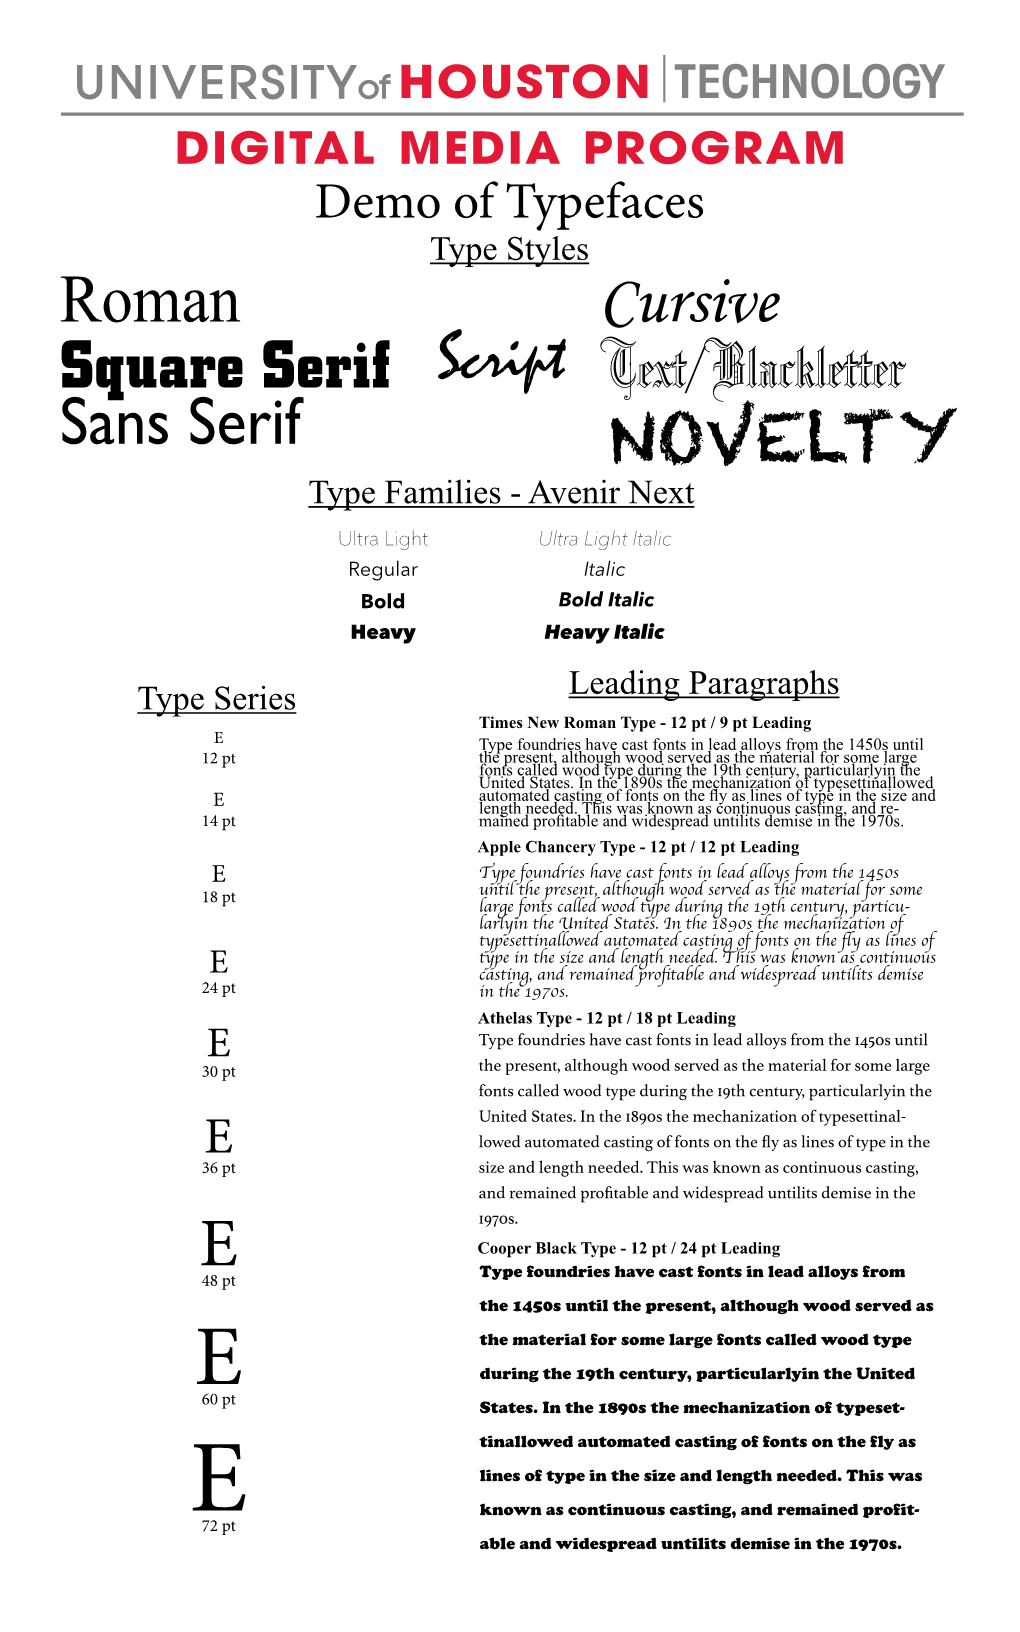 Roman Square Serif Sans Serif Script Cursive Text/Blackletter NOVELTY